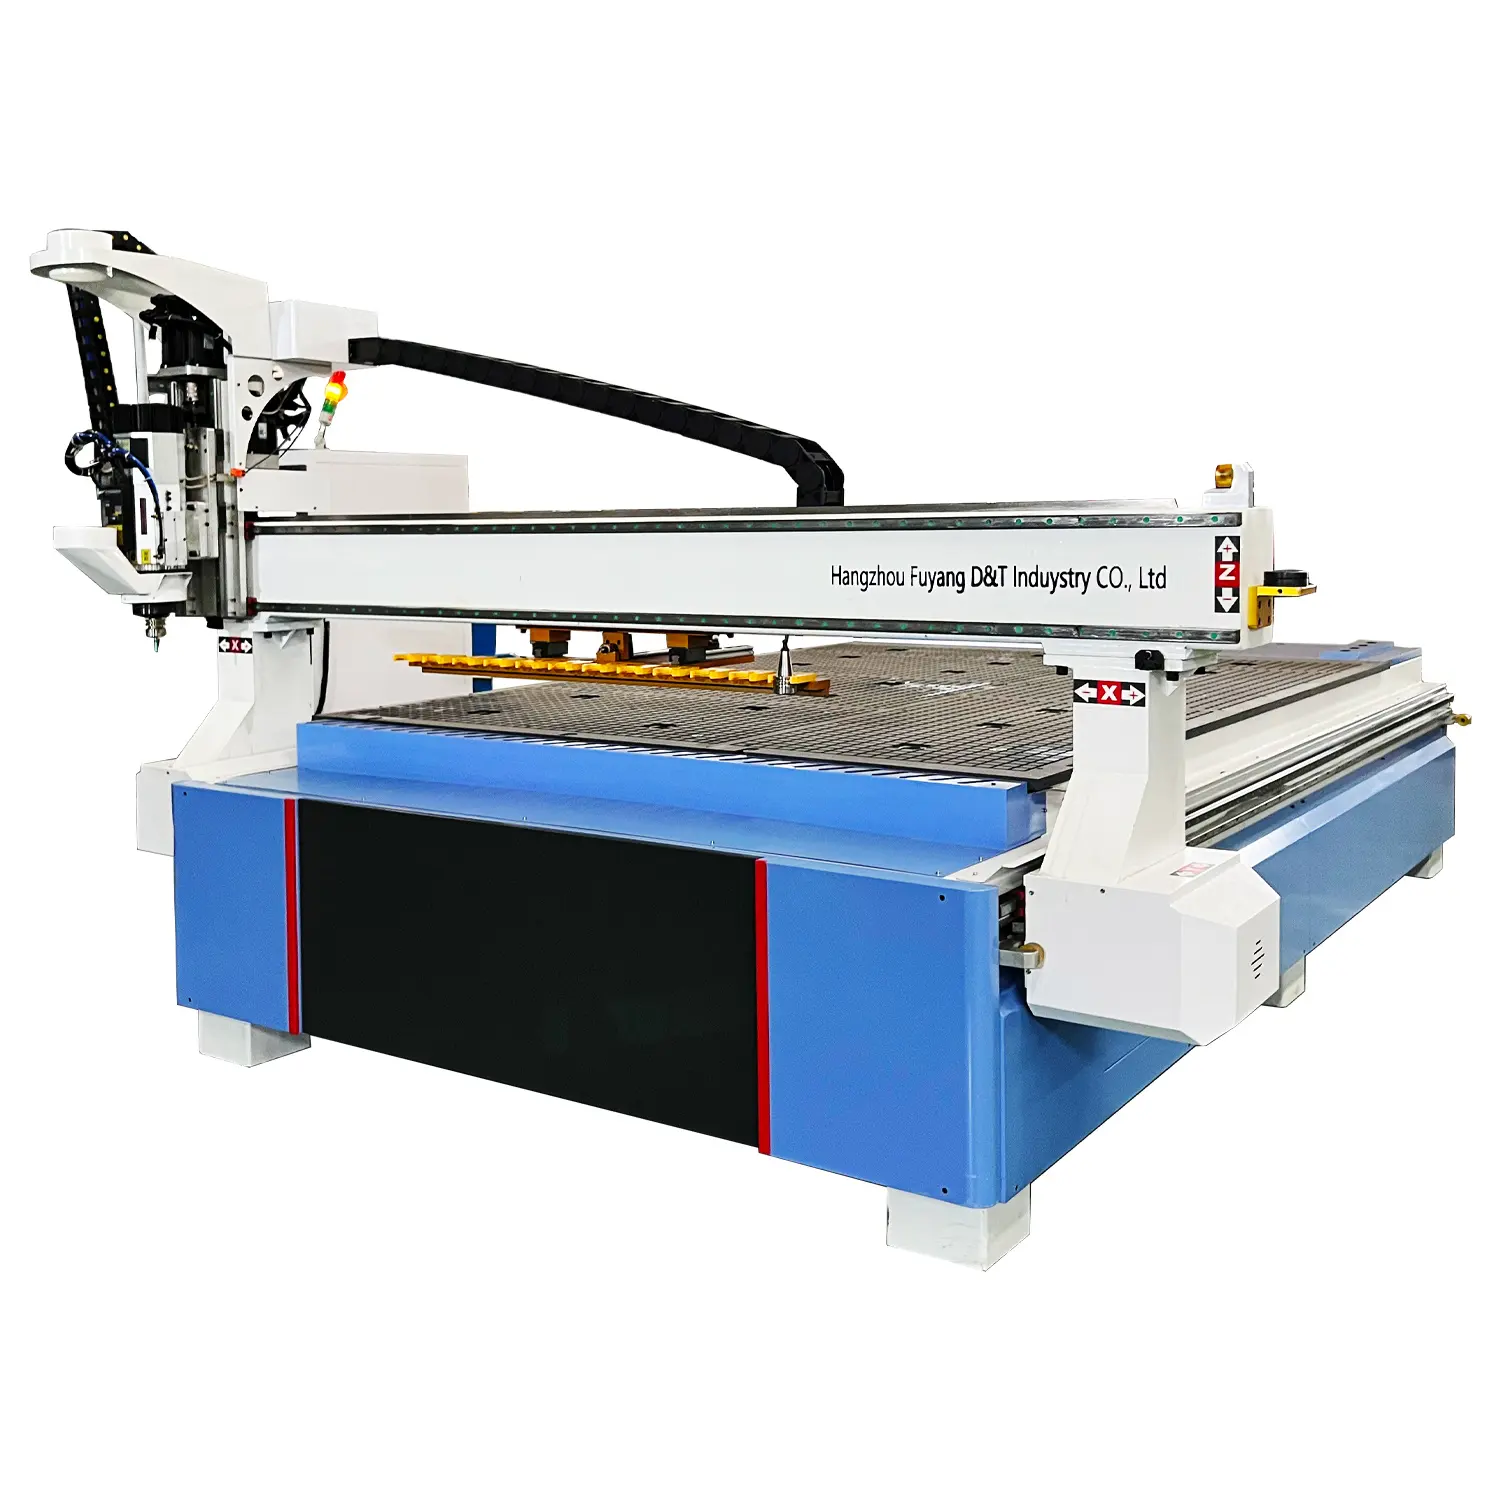 D & t máquina de corte de espuma portátil, cortador de alta qualidade do cnc máquina de corte plasma/máquina portátil do cnc para venda